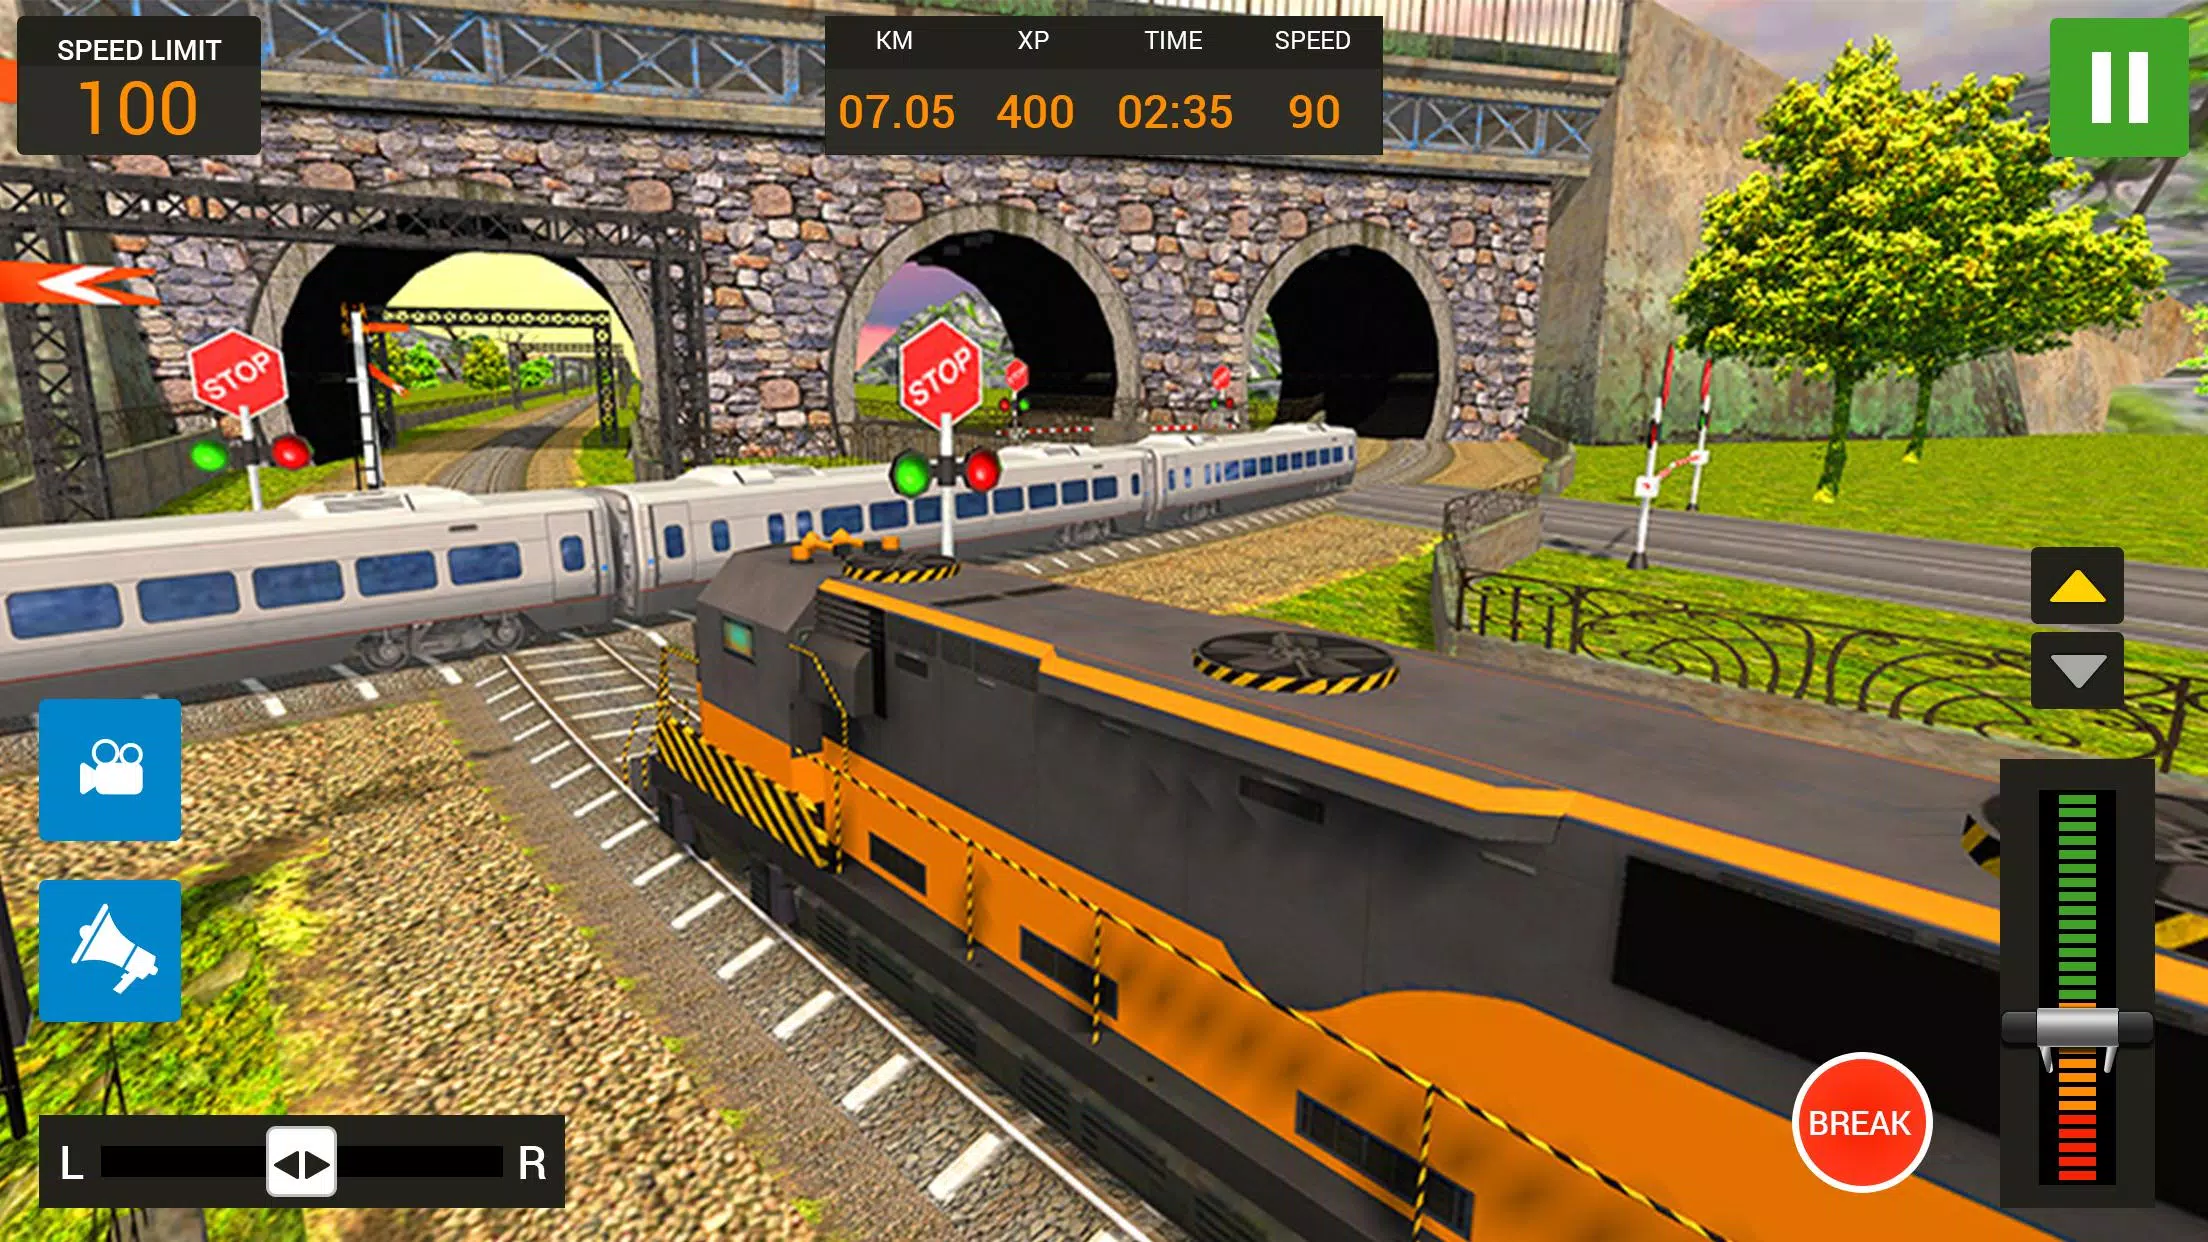 Simulador de trem fantasma::Appstore for Android